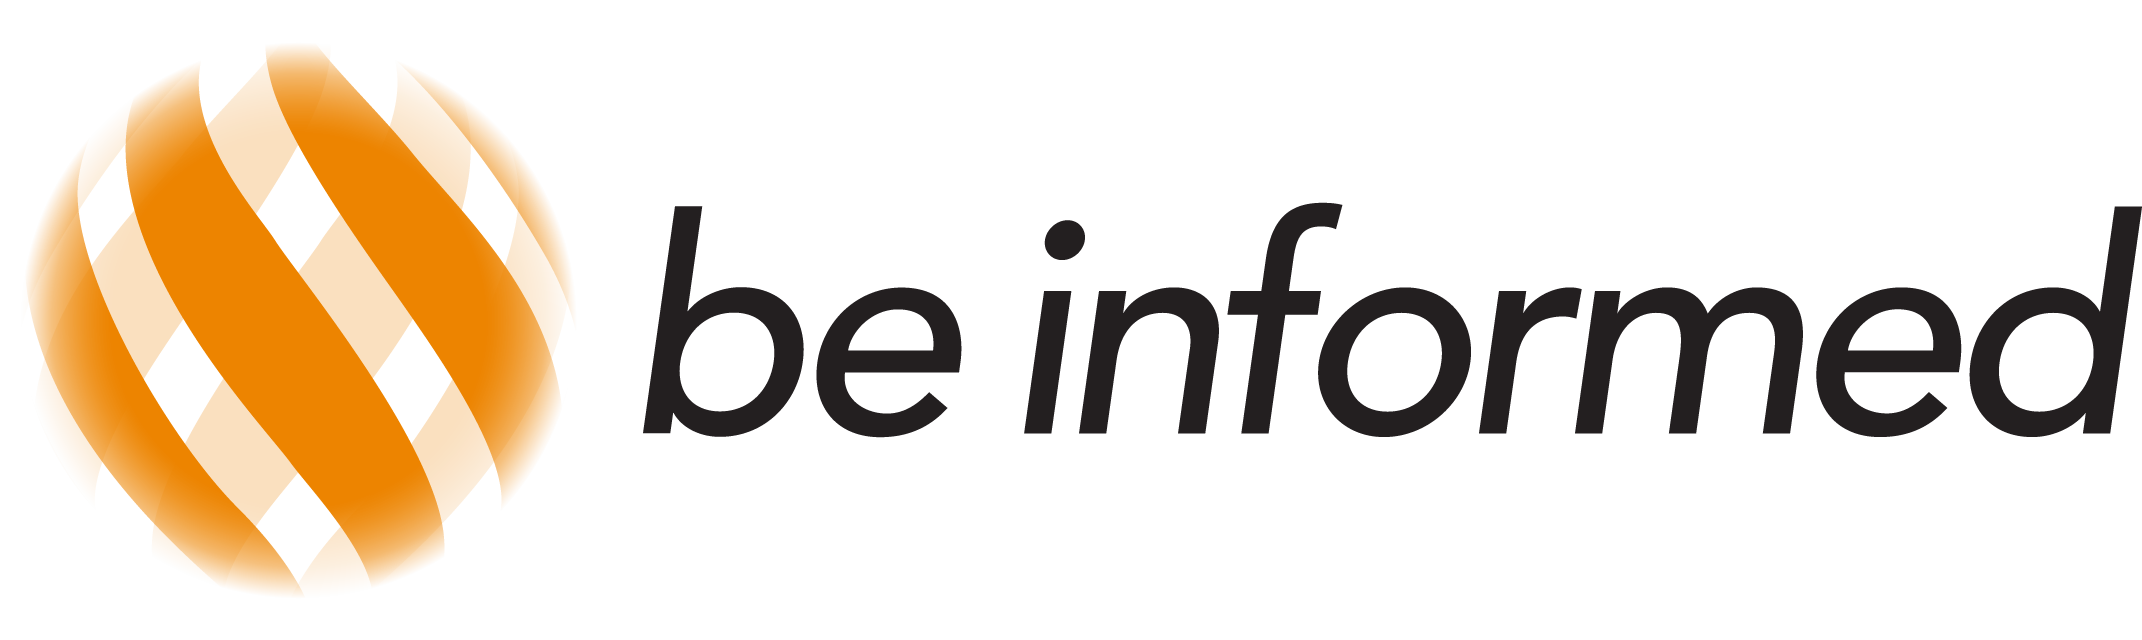 Be Informed logo